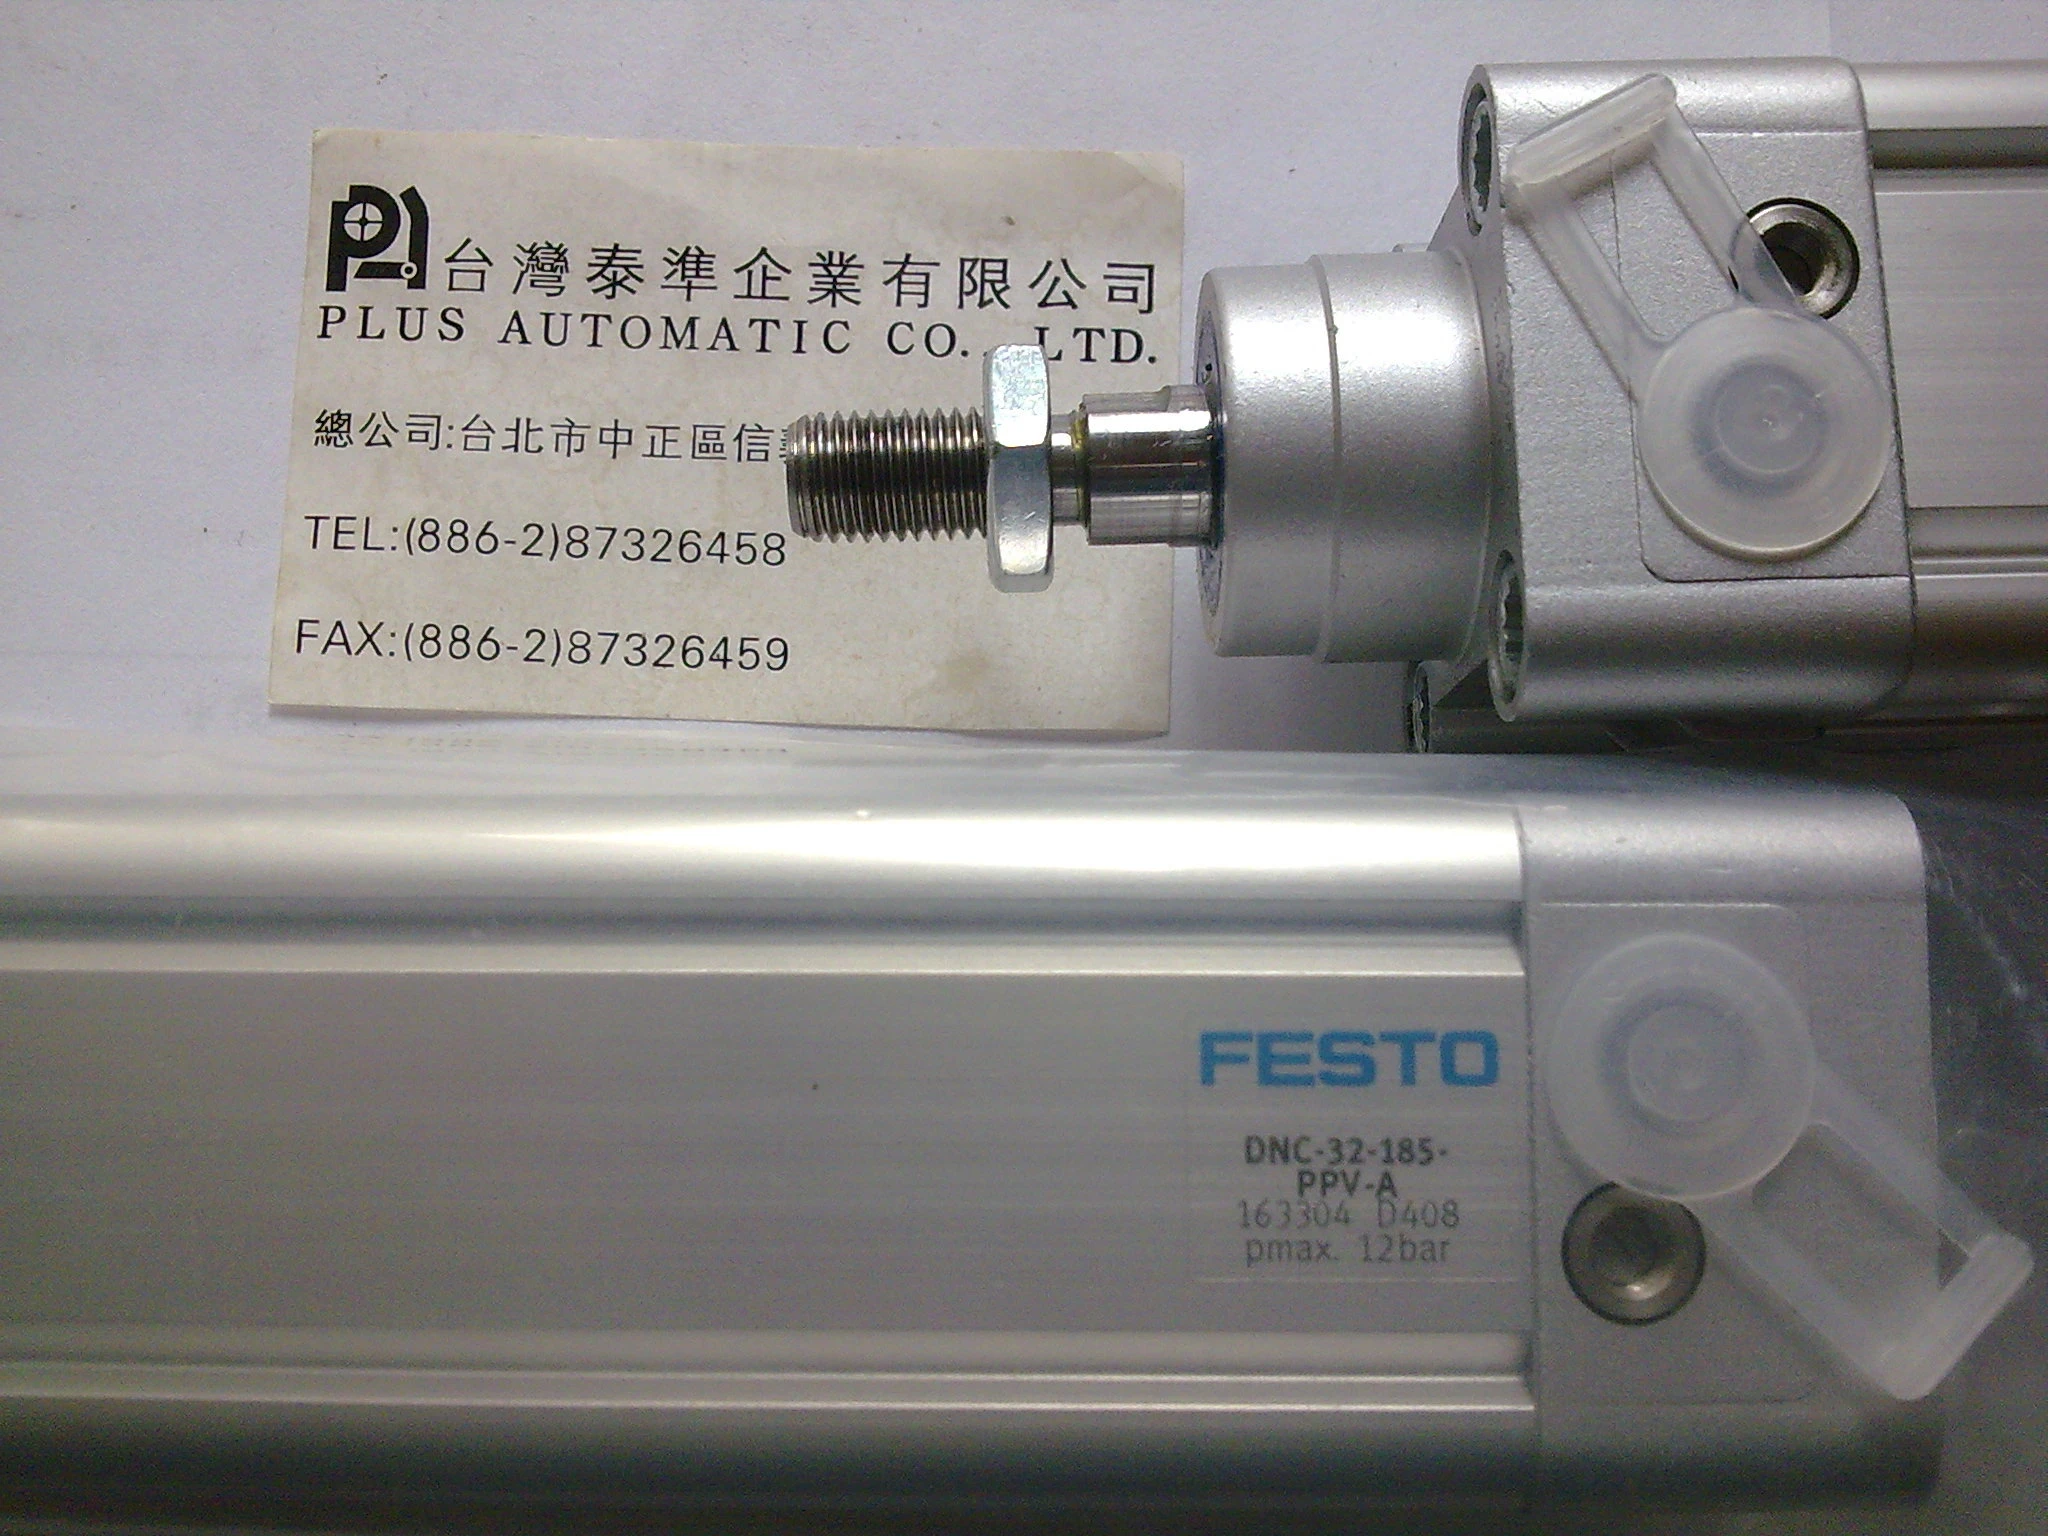 FESTO 氣壓缸DNC-32-185-PPV-A